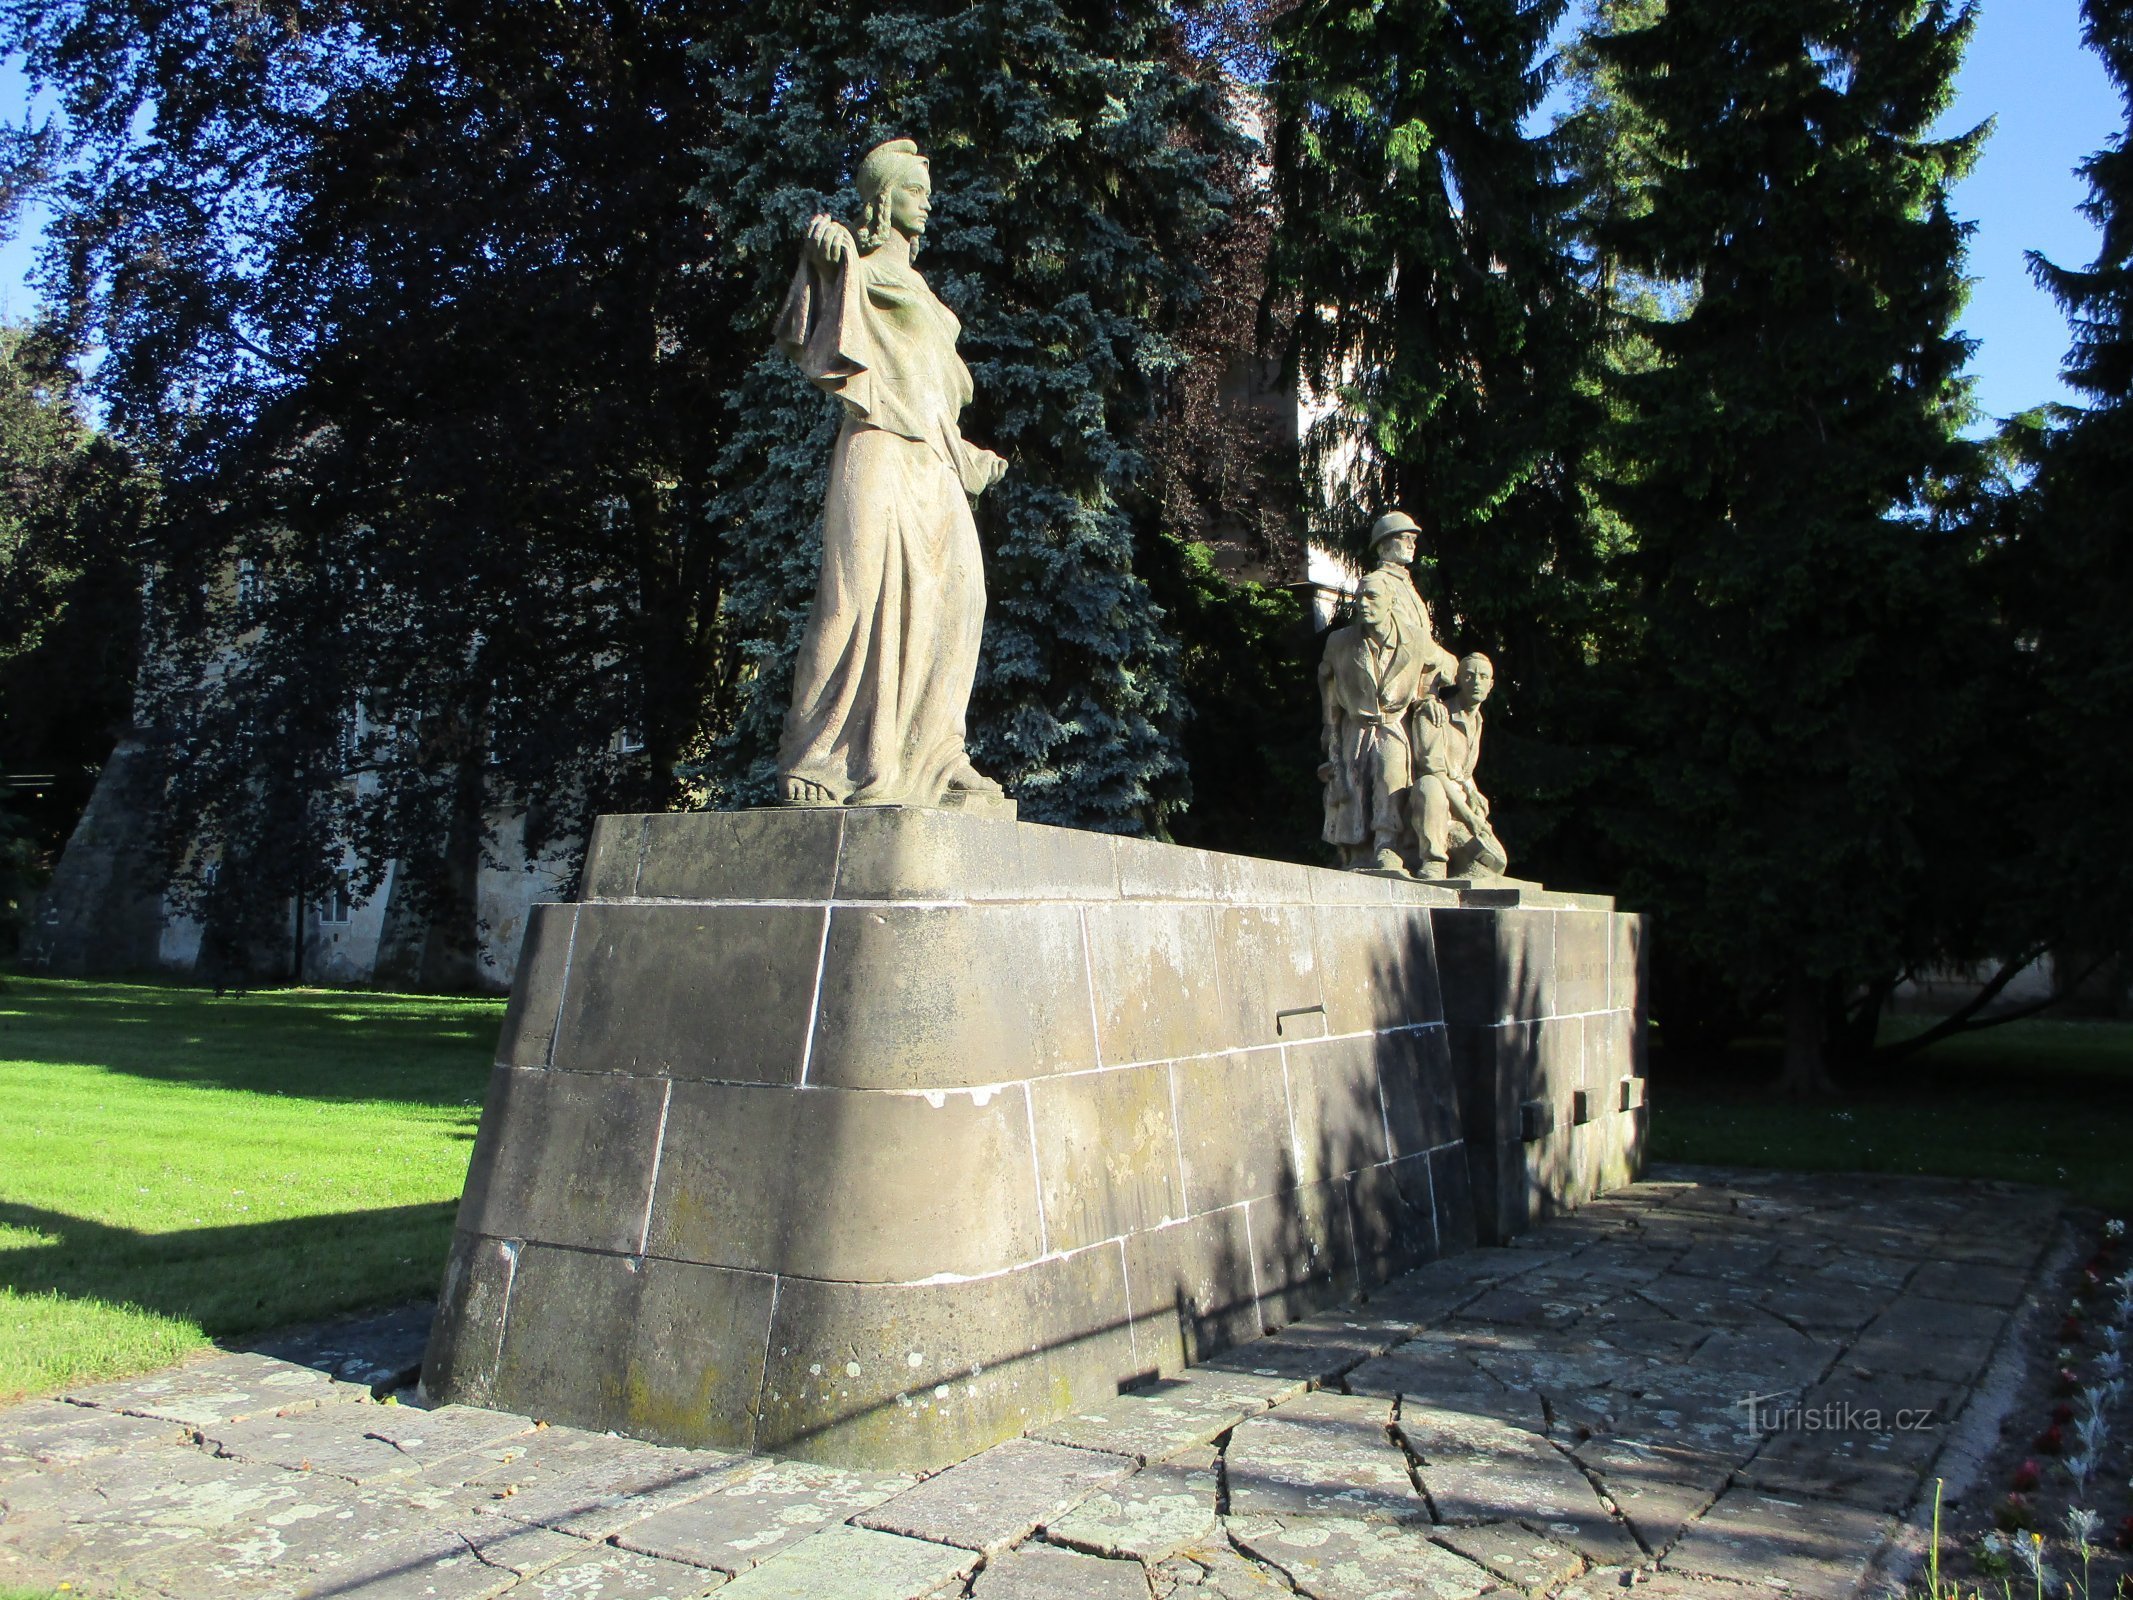 Пам'ятник опору та жертвам Другої світової війни (Сміржіце, 2 червня 2.6.2019 р.)